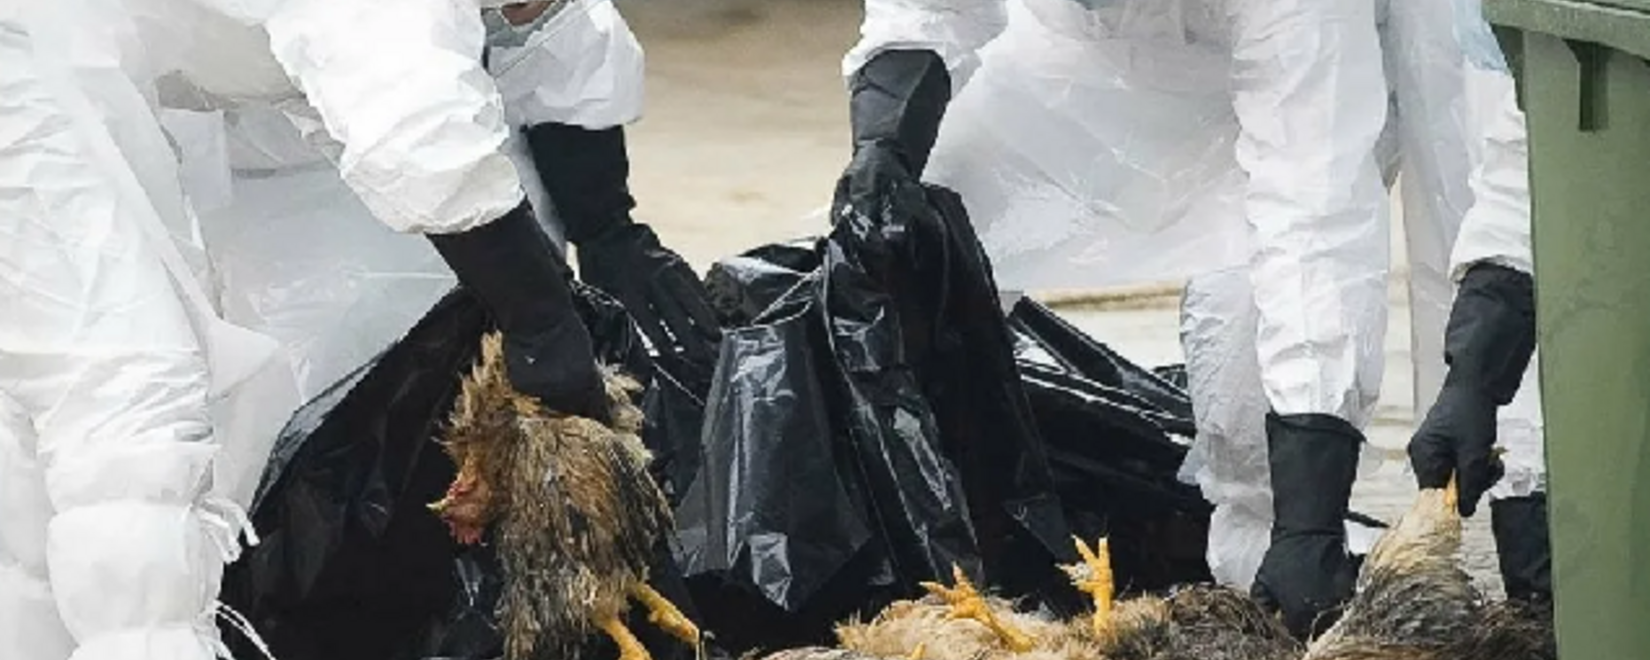 Эпидемия гриппа птицы в Британии: уничтожение животных и новые стратегии безопасности на фермах